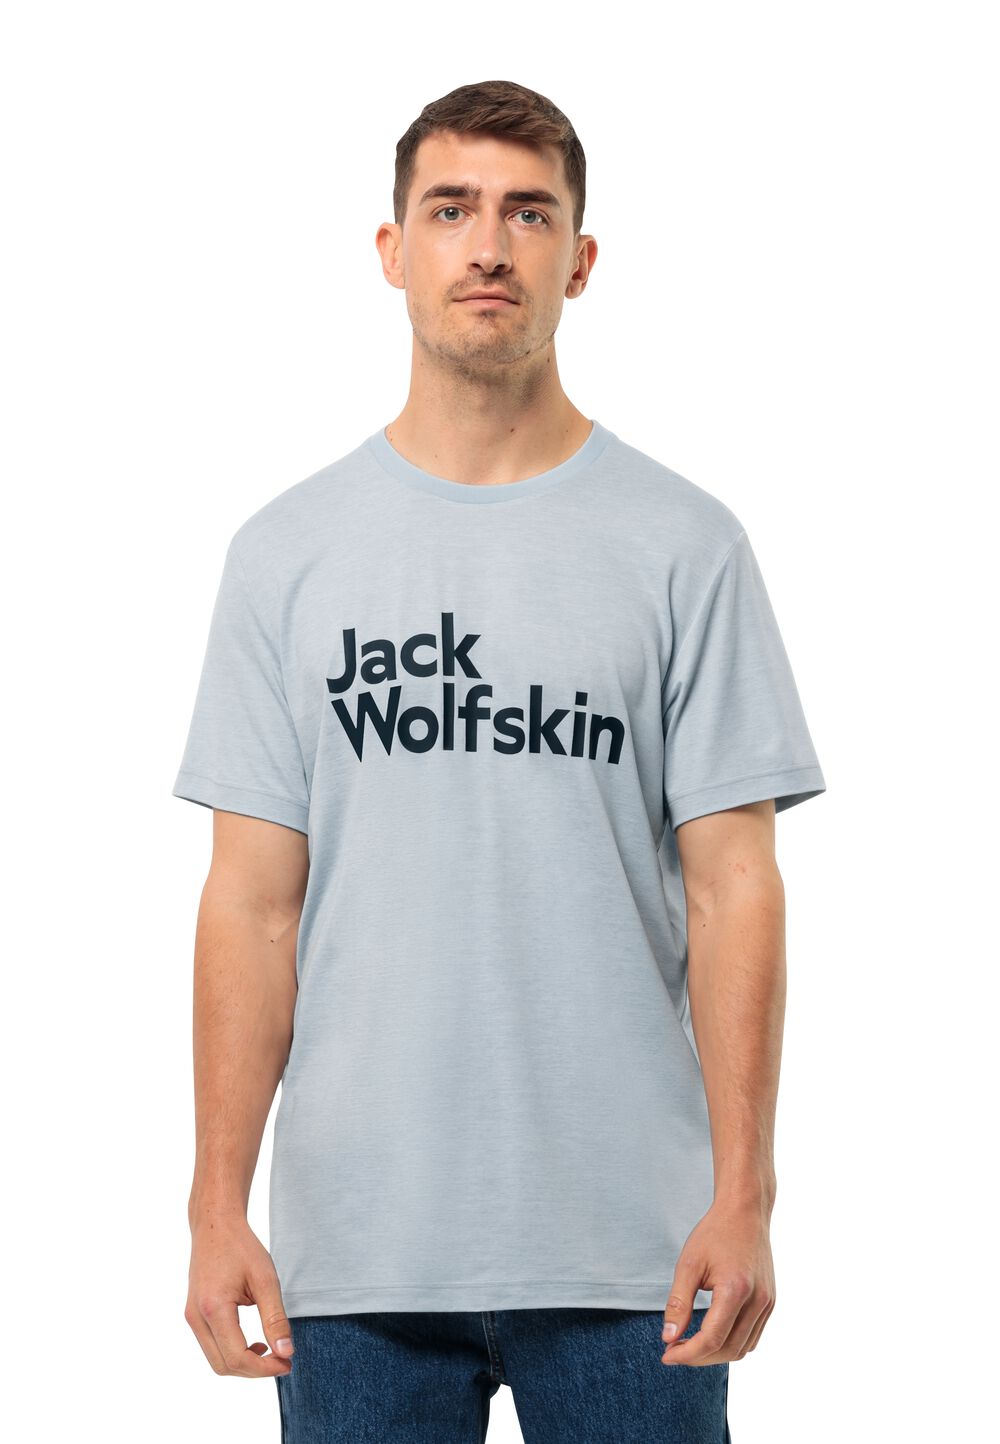 Jack Wolfskin Brand T-Shirt Men Functioneel shirt Heren XL soft blue soft blue